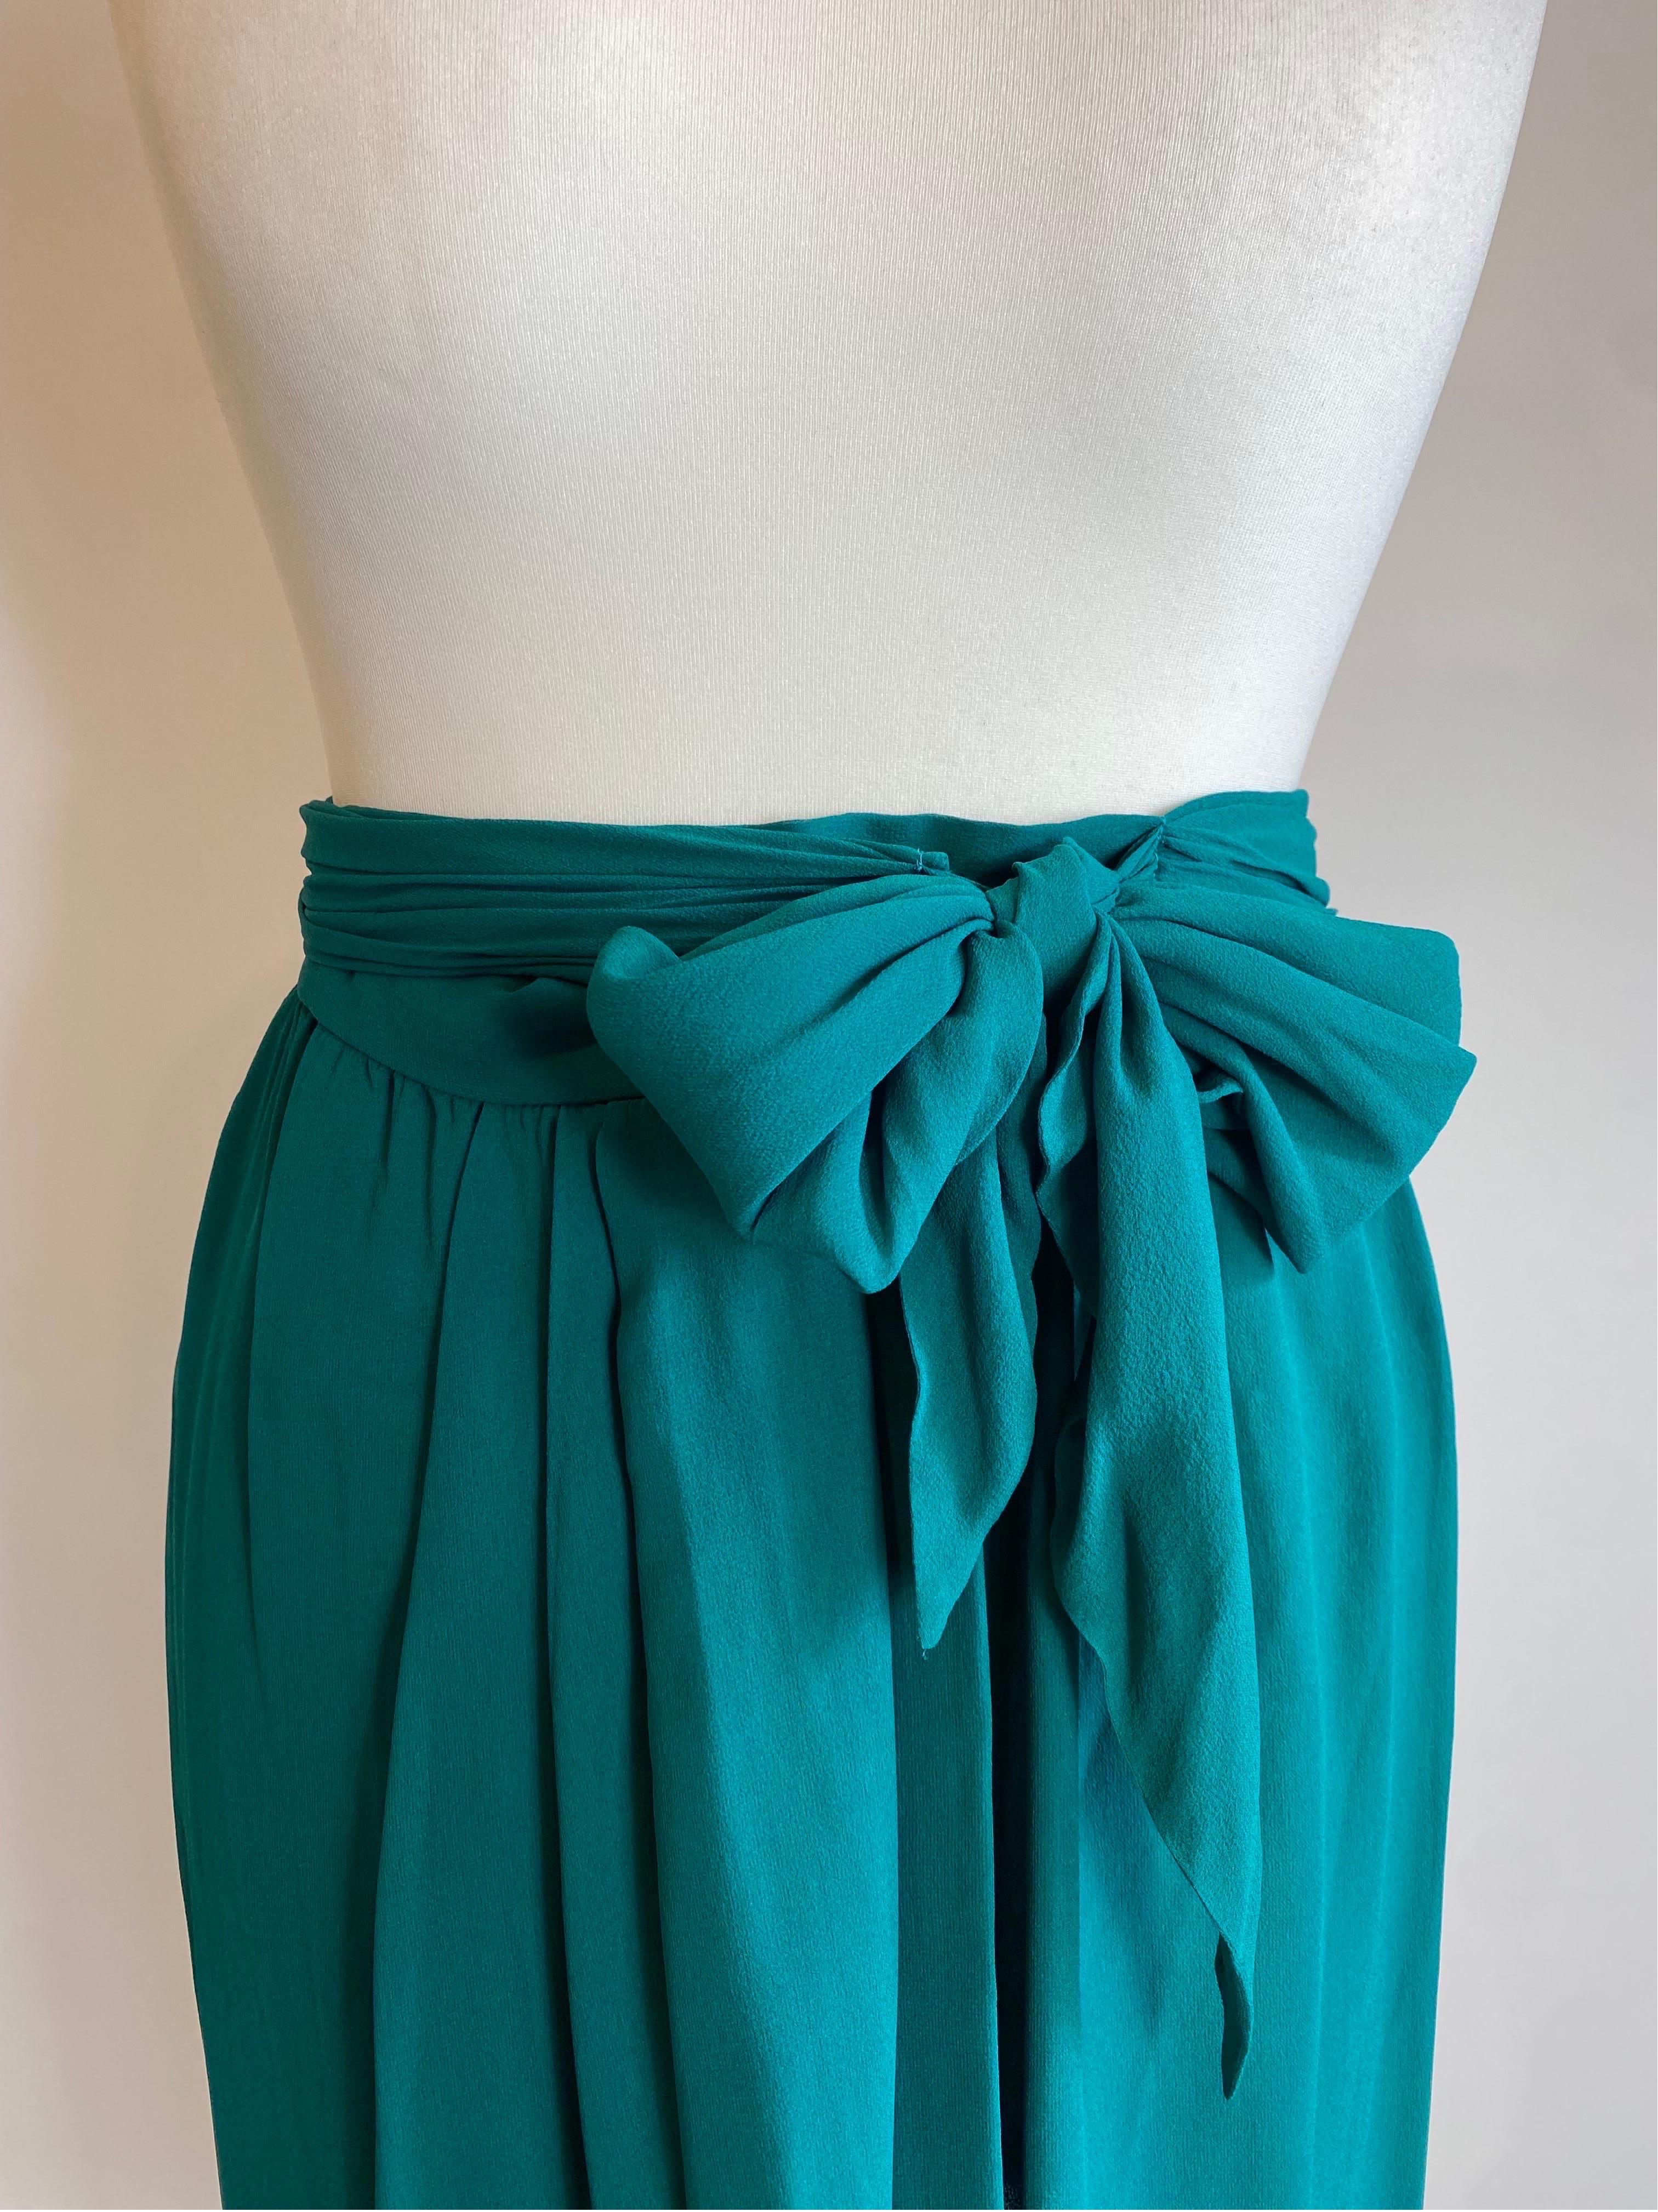 Women's or Men's Yves Saint Laurent Vintage Emerald Green Skirt For Sale